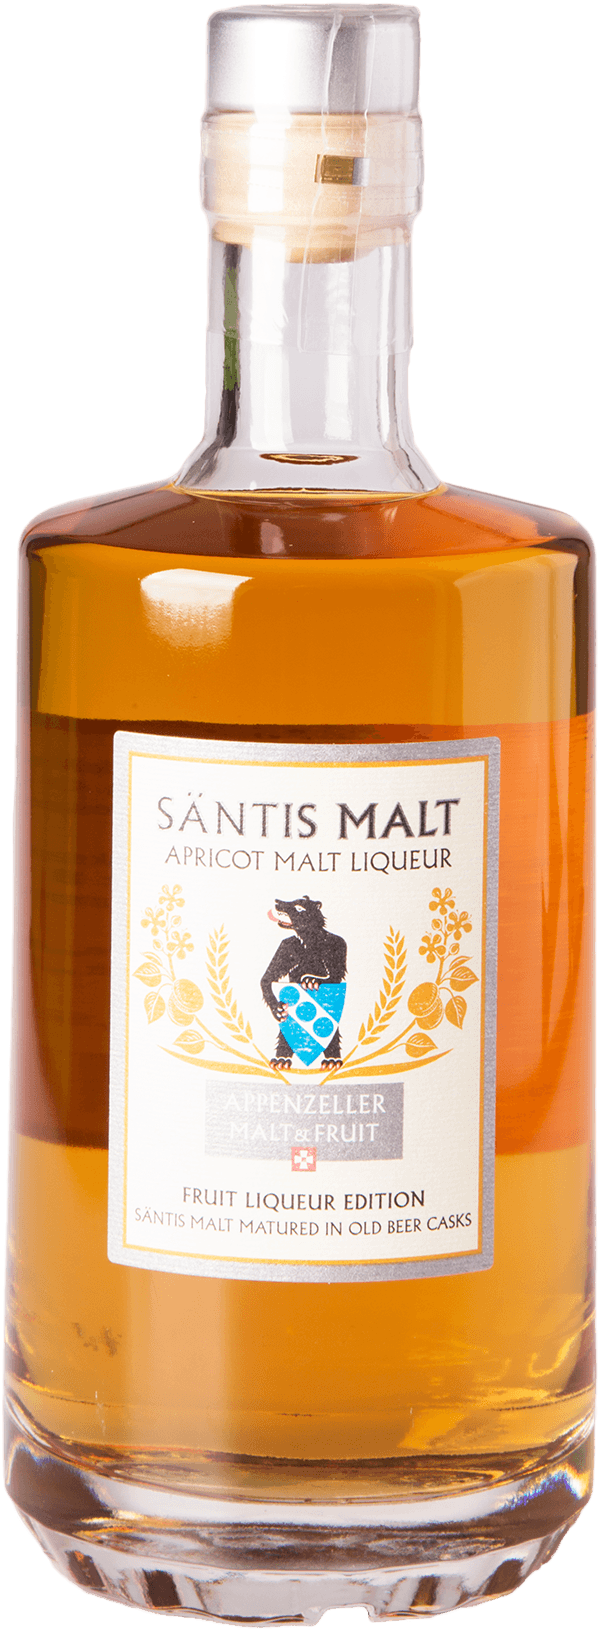 Säntis Malt Apricot Malt Frucht Liqueur Edition 35%